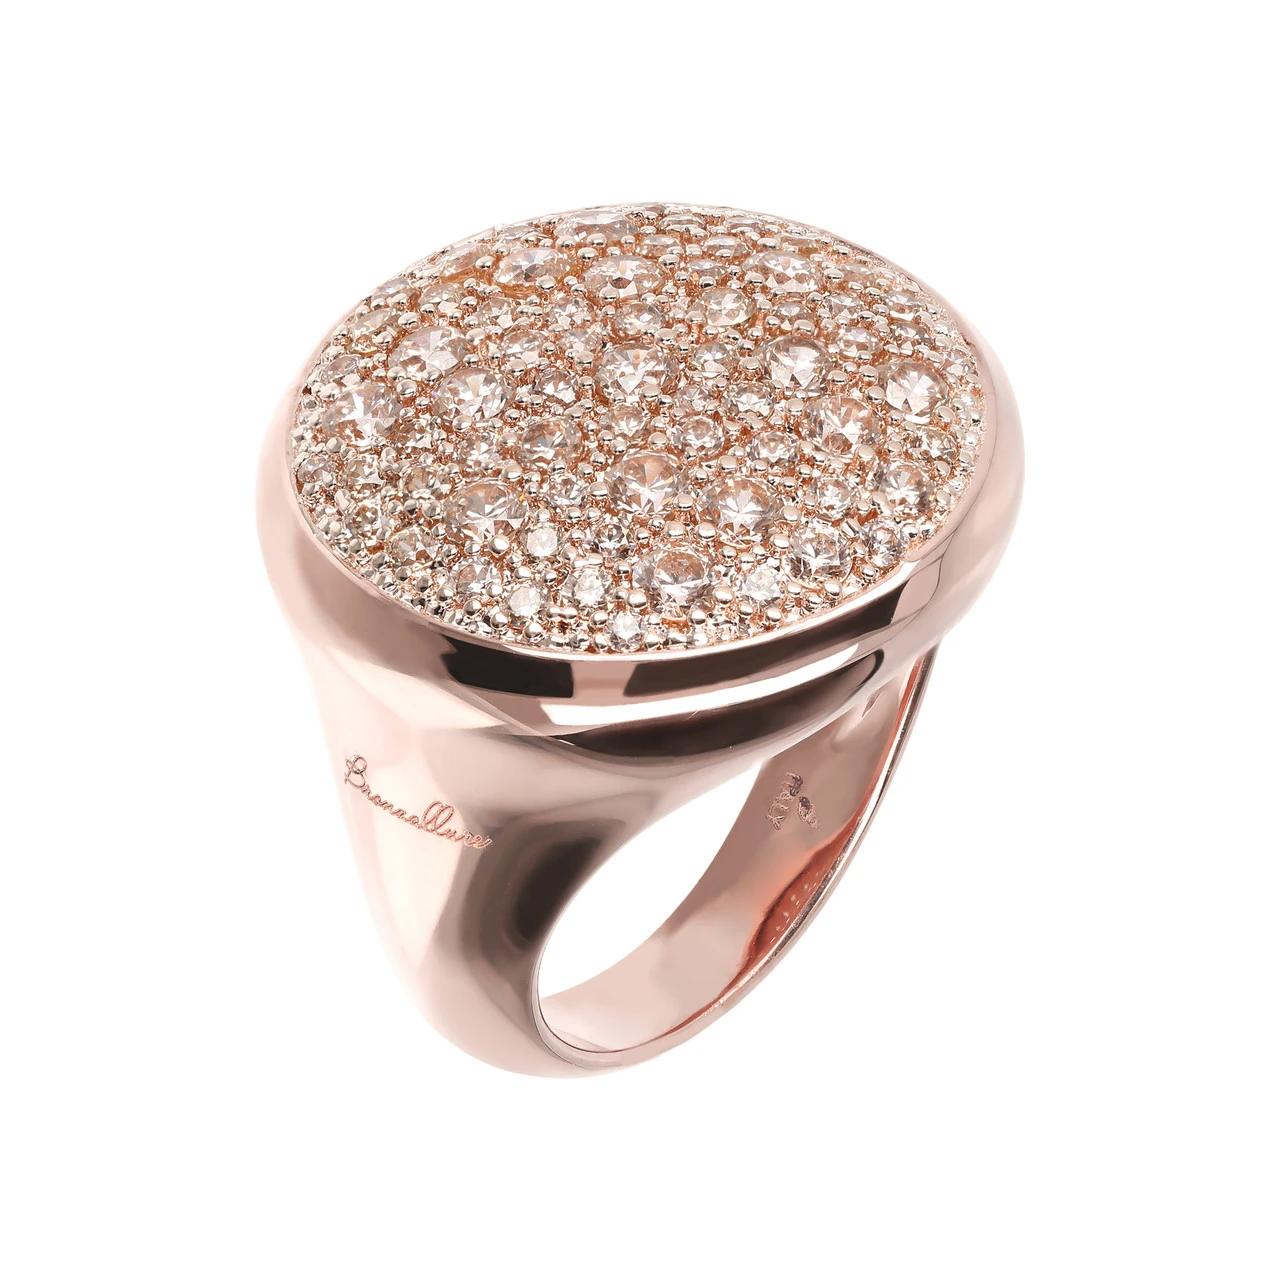 Venta al por mayor de anillos chapados en oro rosa en plata de ley 925 OEM/ODM, diseño de joyería, proveedores mayoristas de joyería fina personalizados